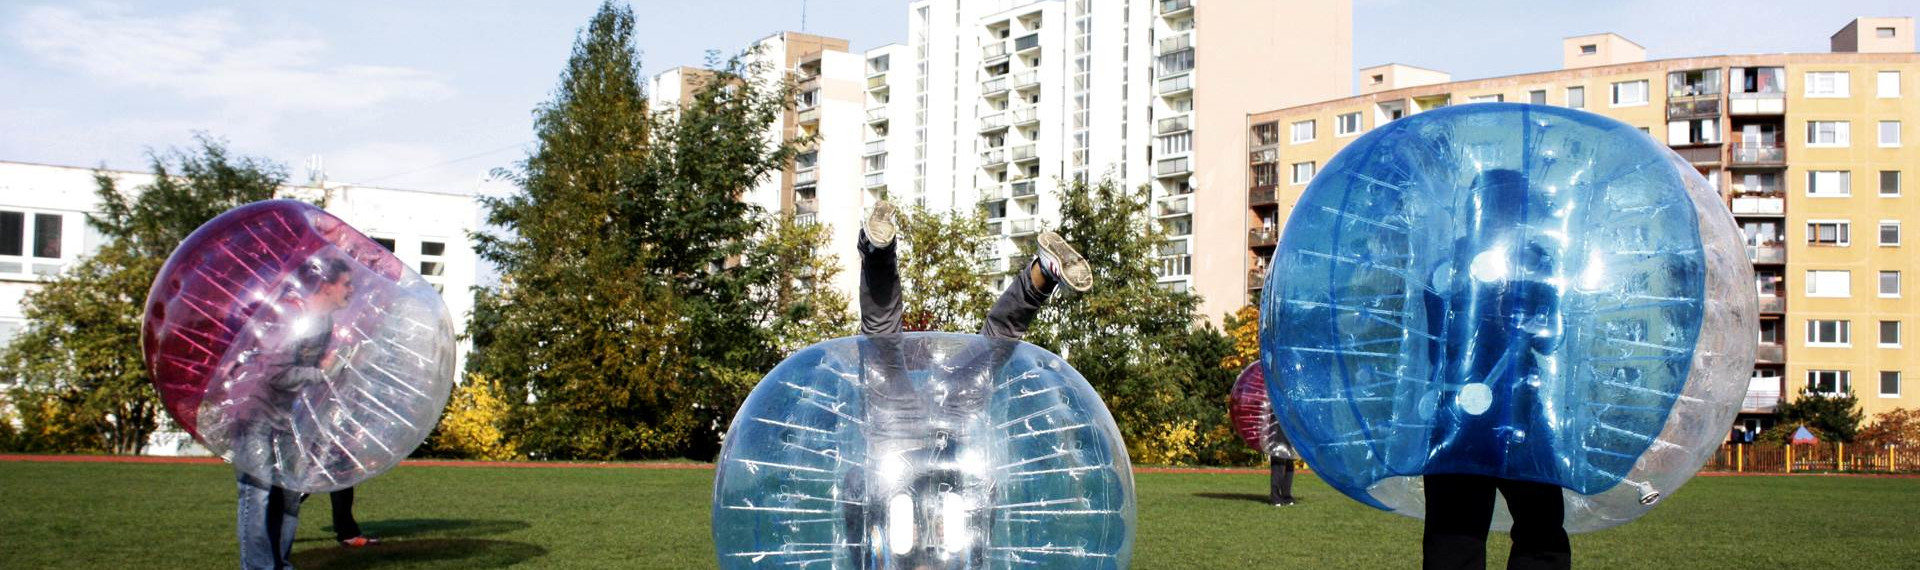 Bubble-Fodbold - Den sjoveste slags fodbold der findes